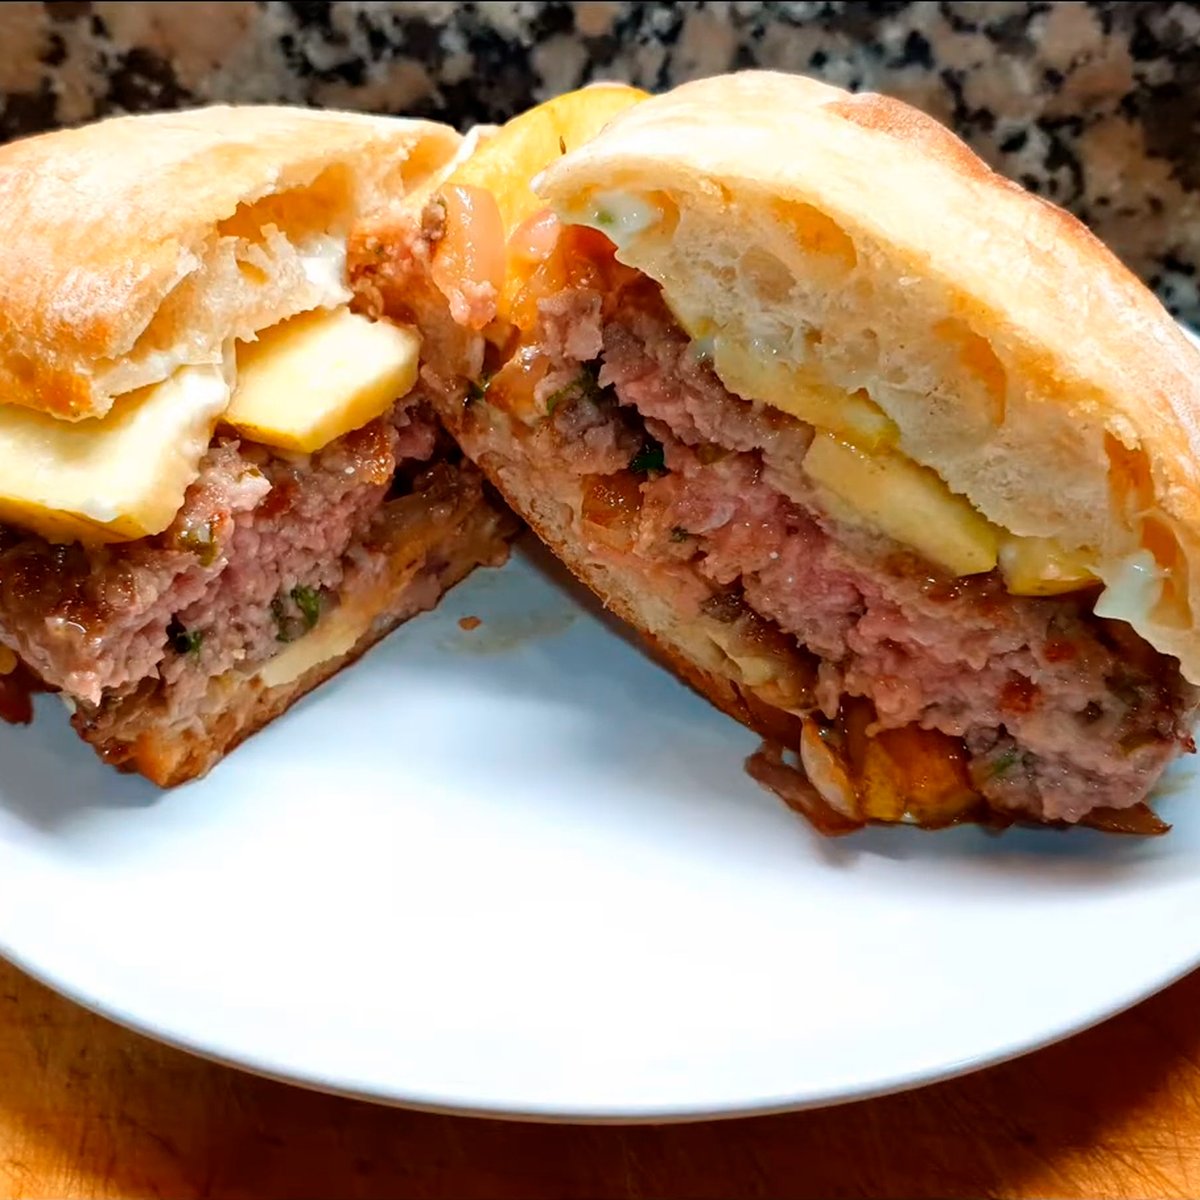 😍🍔 Este #domingo se celebra el #DiadelaHamburguesa y, por eso, queremos compartir la #receta de #hamburguesa con @TerneradeEx, @DOPGataHurdes y, por supuesto, nuestra #miel #DOP #VilluercasIbores de @MiCocinaJIF. 

▶️ youtube.com/watch?v=mynqdb…

#Gastronomia #Sabor #CocinaFacil